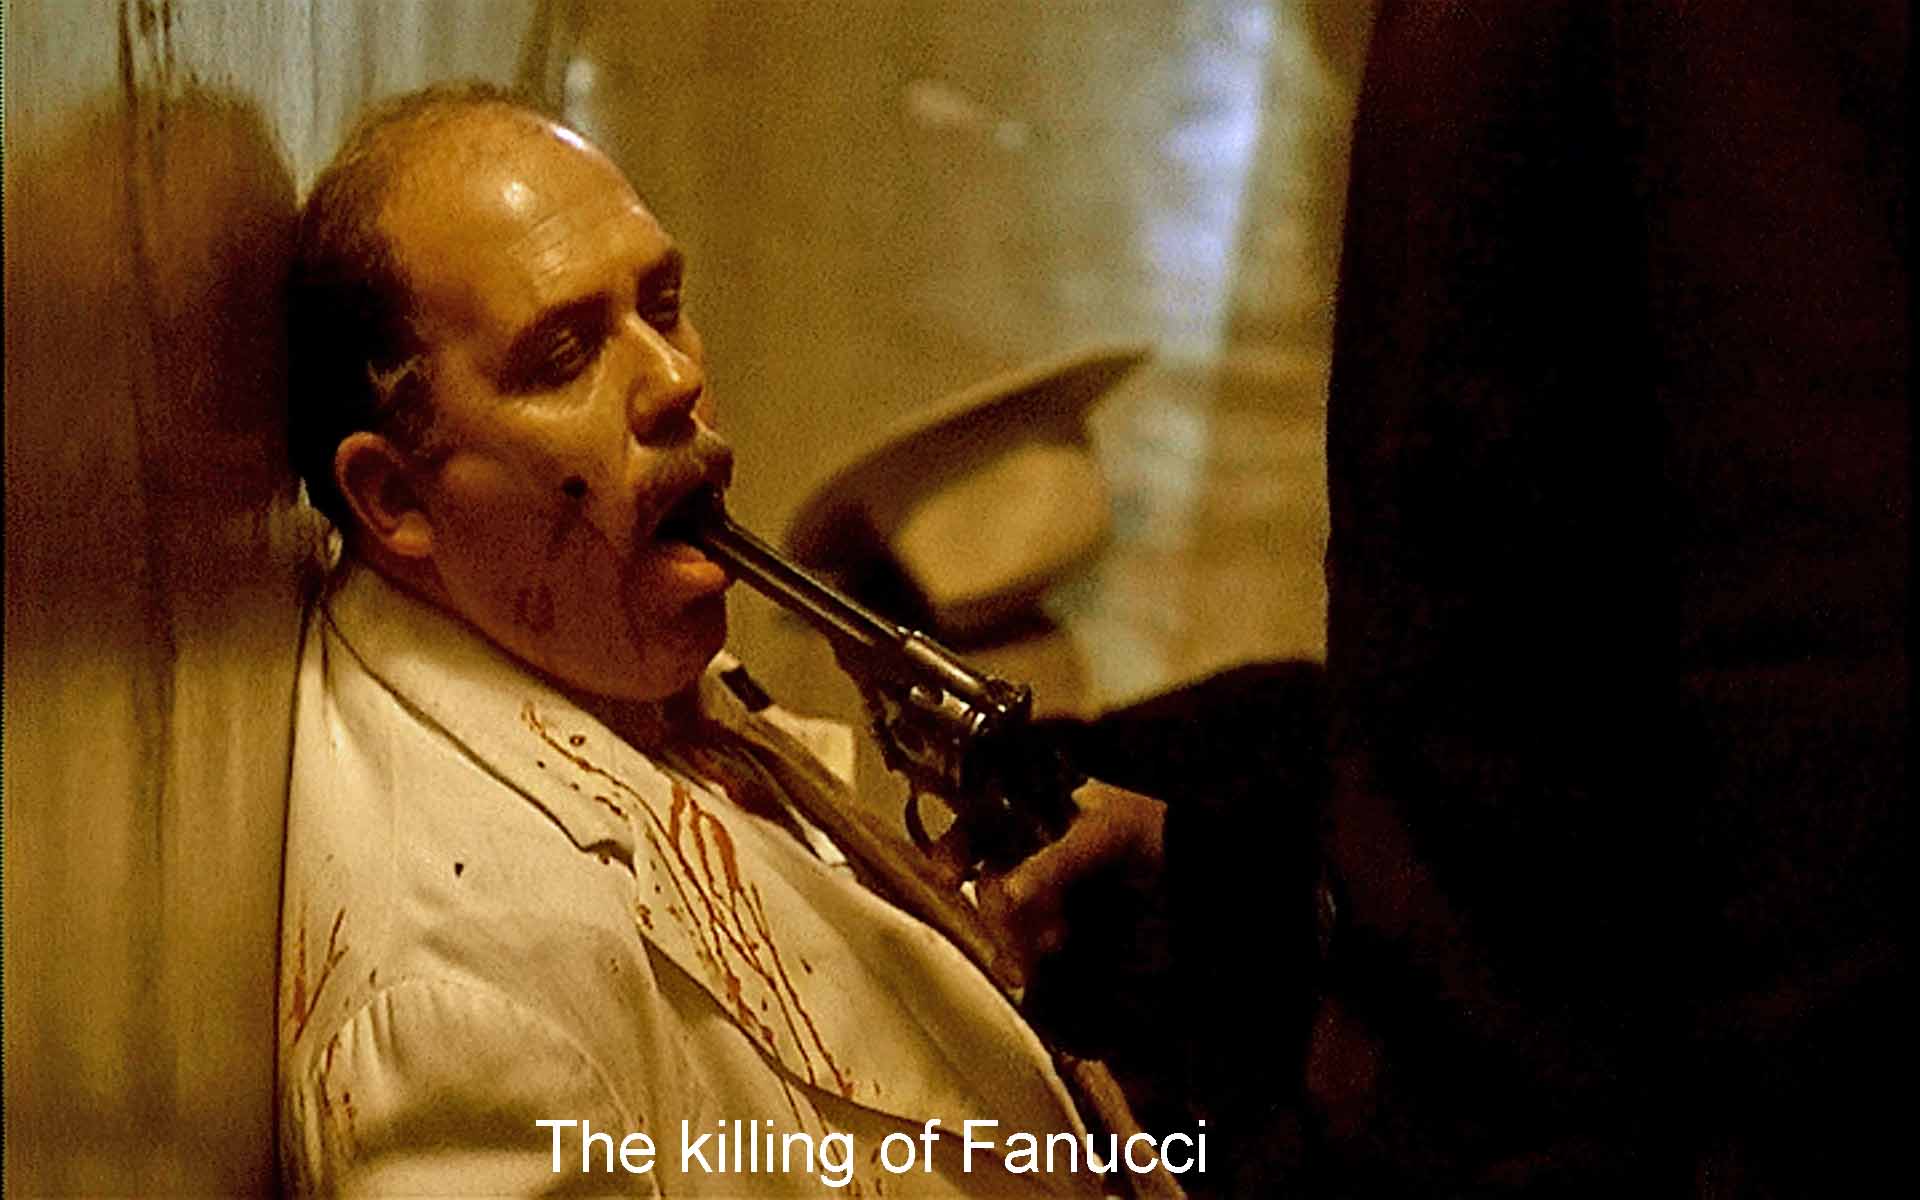 The killing of Fanucci